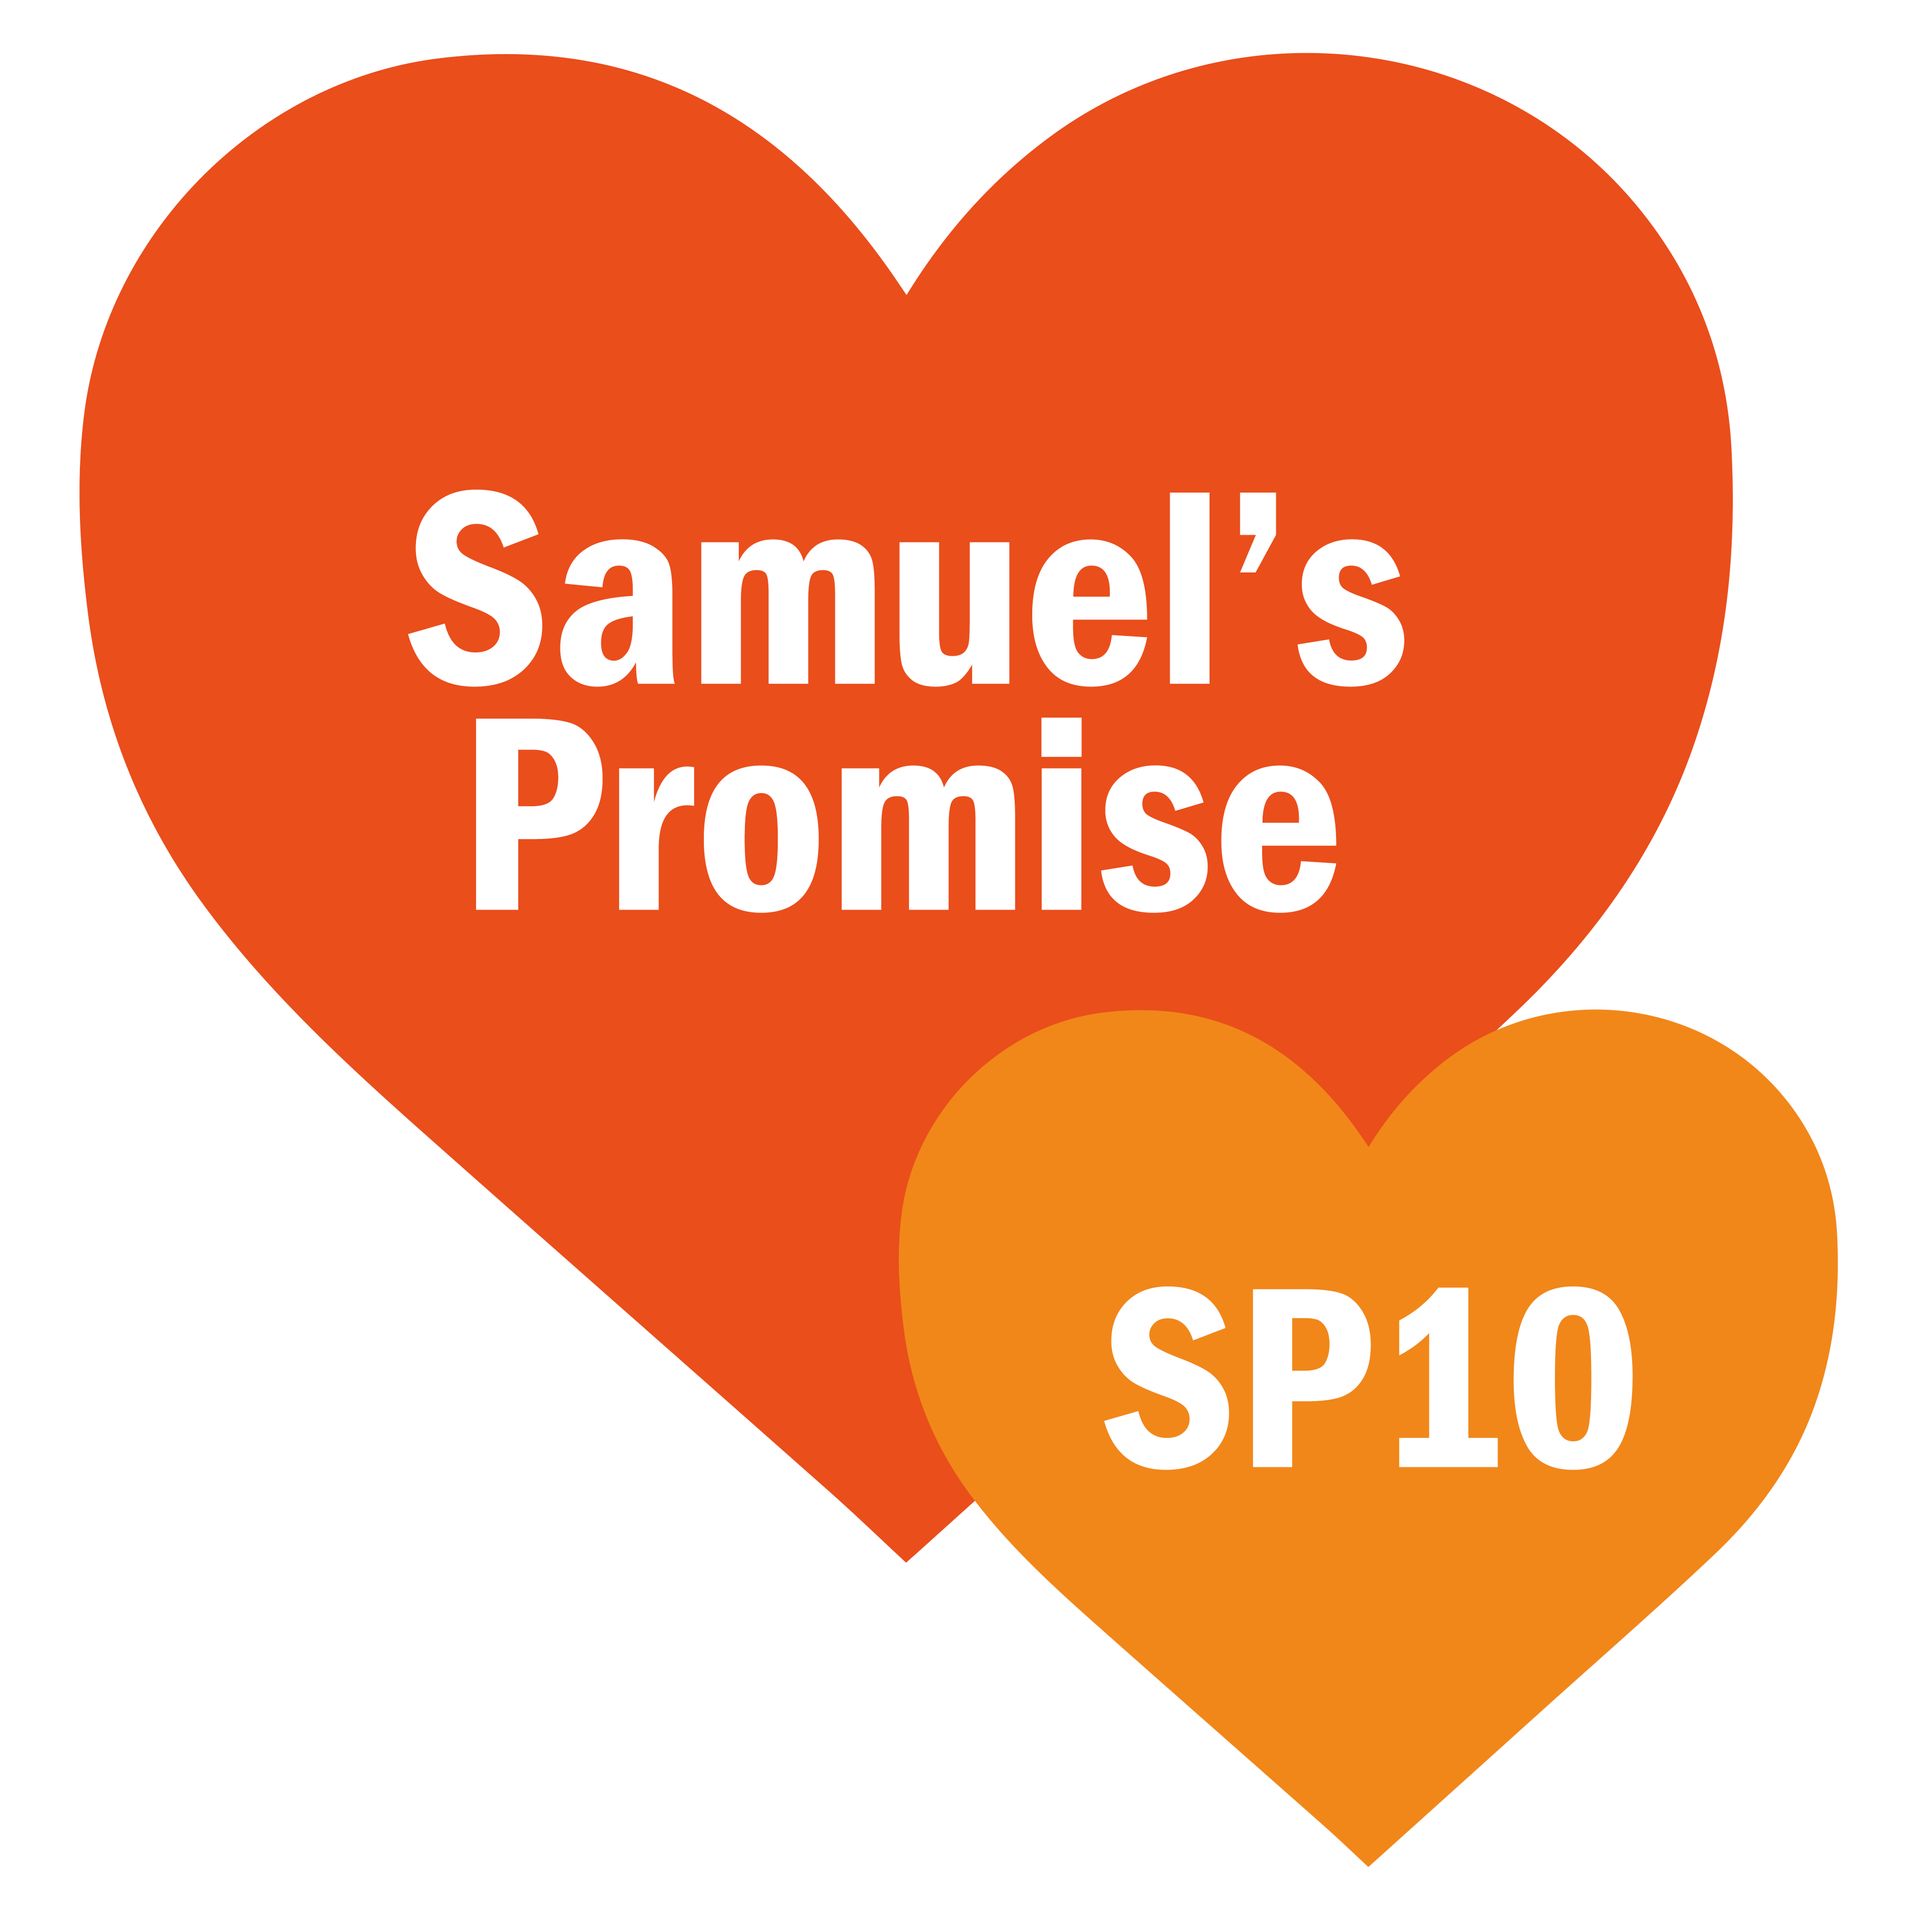 Samuel's Promise